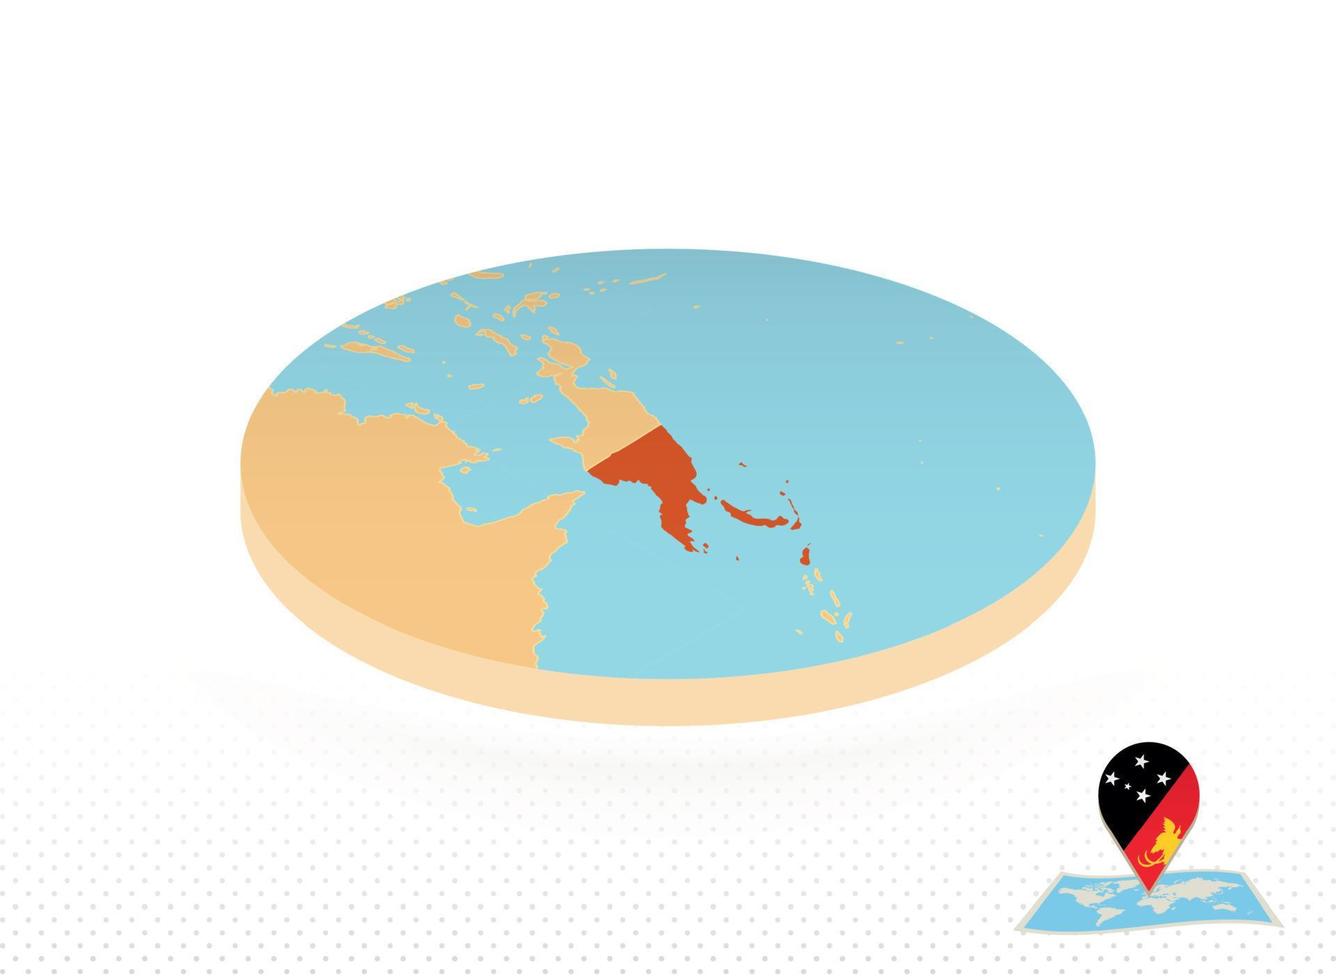 Papoea nieuw Guinea kaart ontworpen in isometrische stijl, oranje cirkel kaart. vector